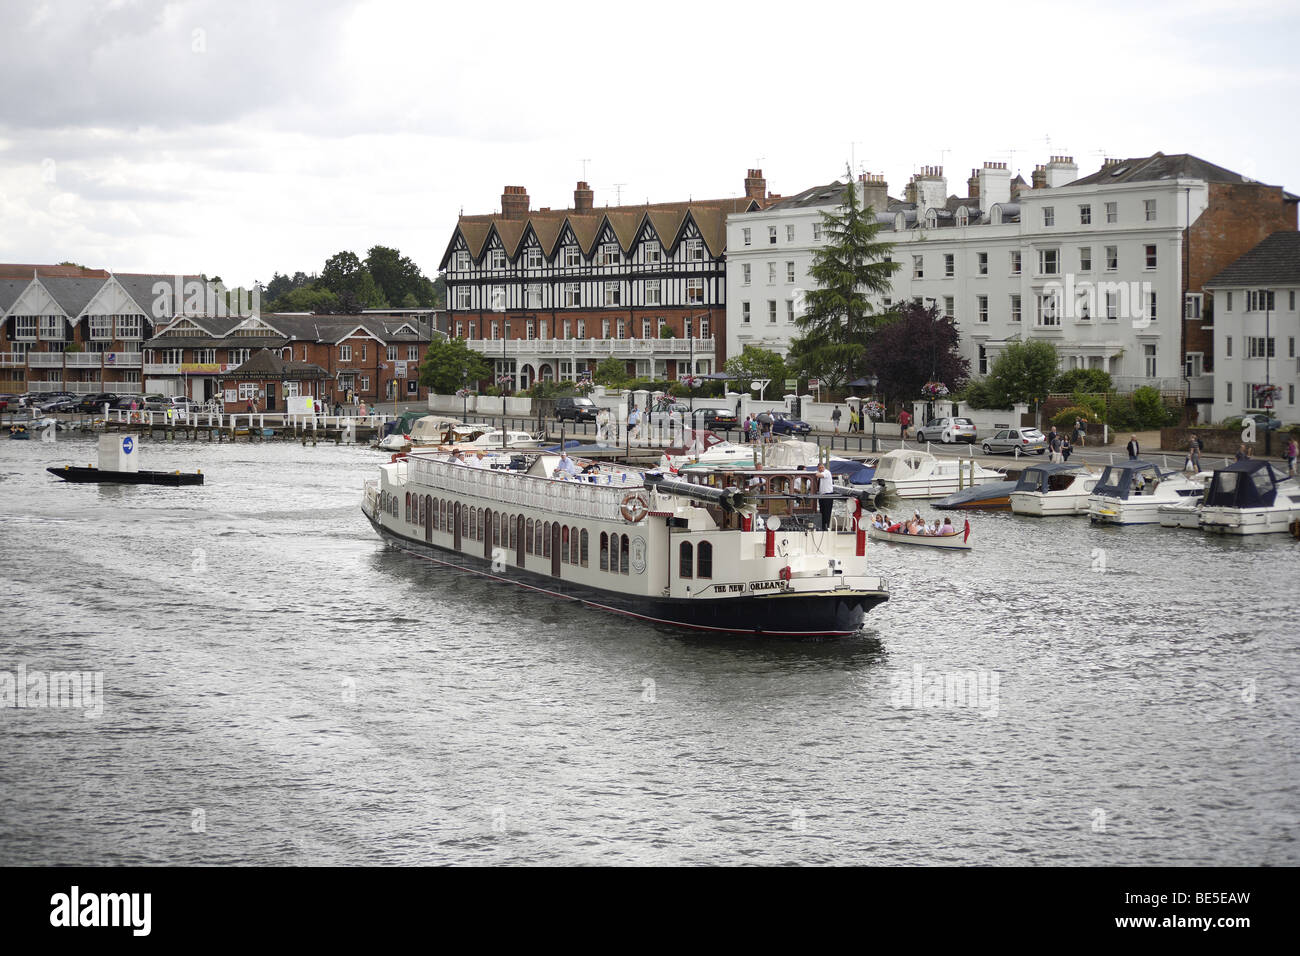 Fluss Boote Henley Regatta, Themse Großbritannien jährliche Traditionsveranstaltung der britischen Universitäten. Stewards und am Wasser-Attraktionen Stockfoto